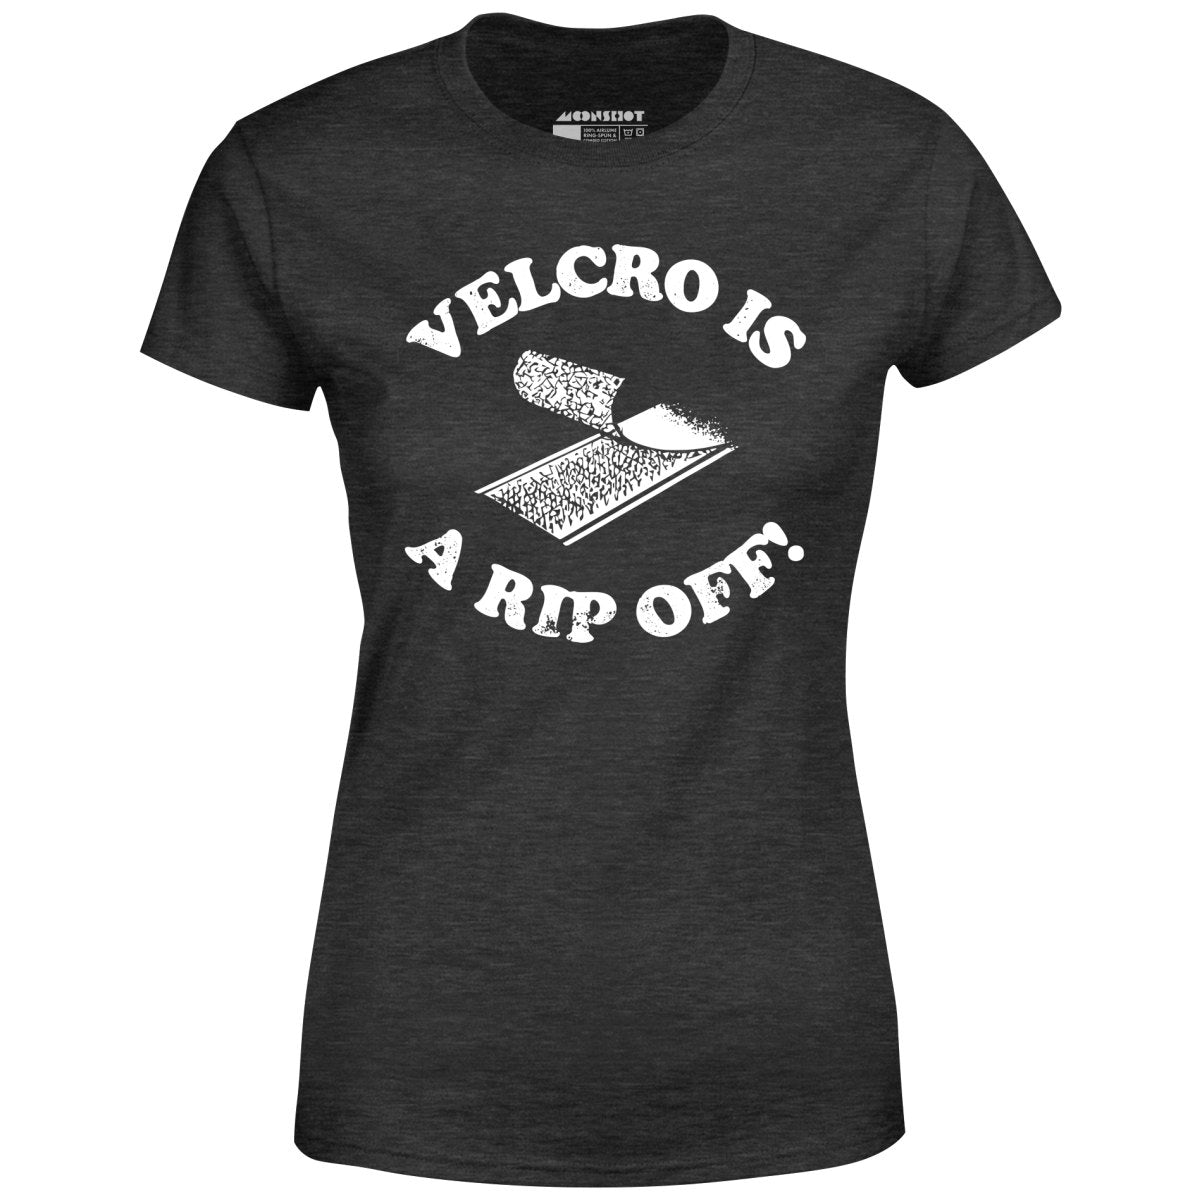 Velcro is a Rip Off - Women's T-Shirt